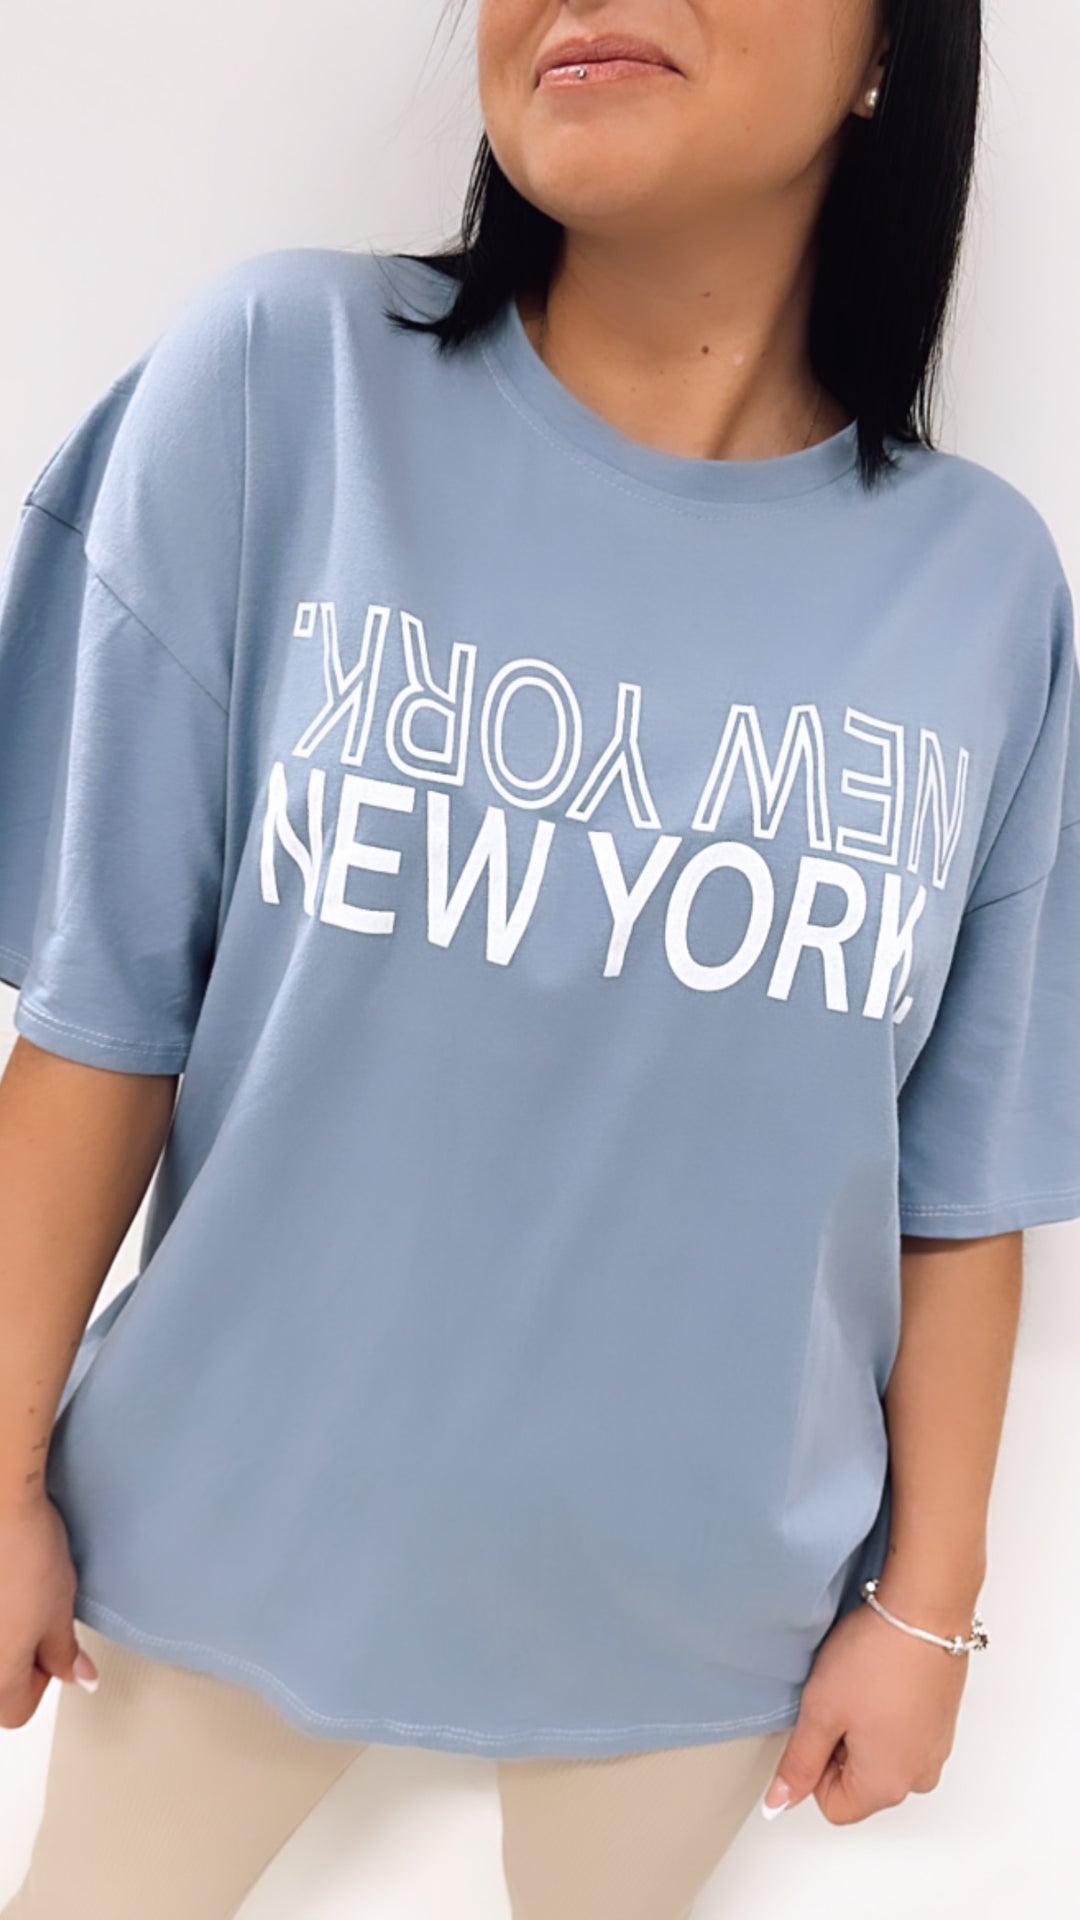 T-shirt "New York" / taubenblau Art. 5515